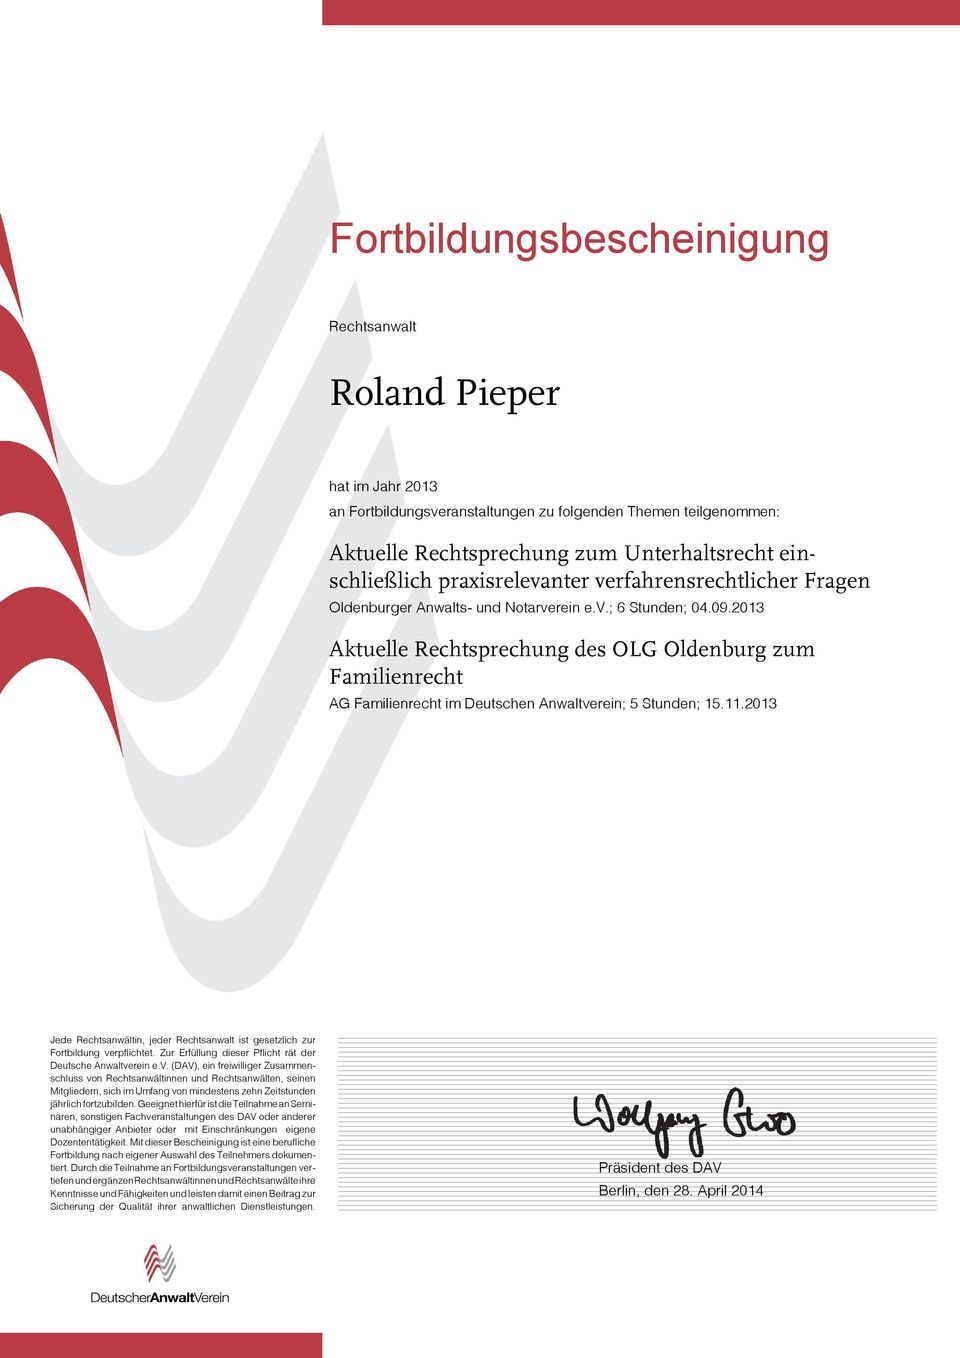 2013 Aktuelle Rechtsprechung des OLG Oldenburg zum Familienrecht AG Familienrecht im Deutschen